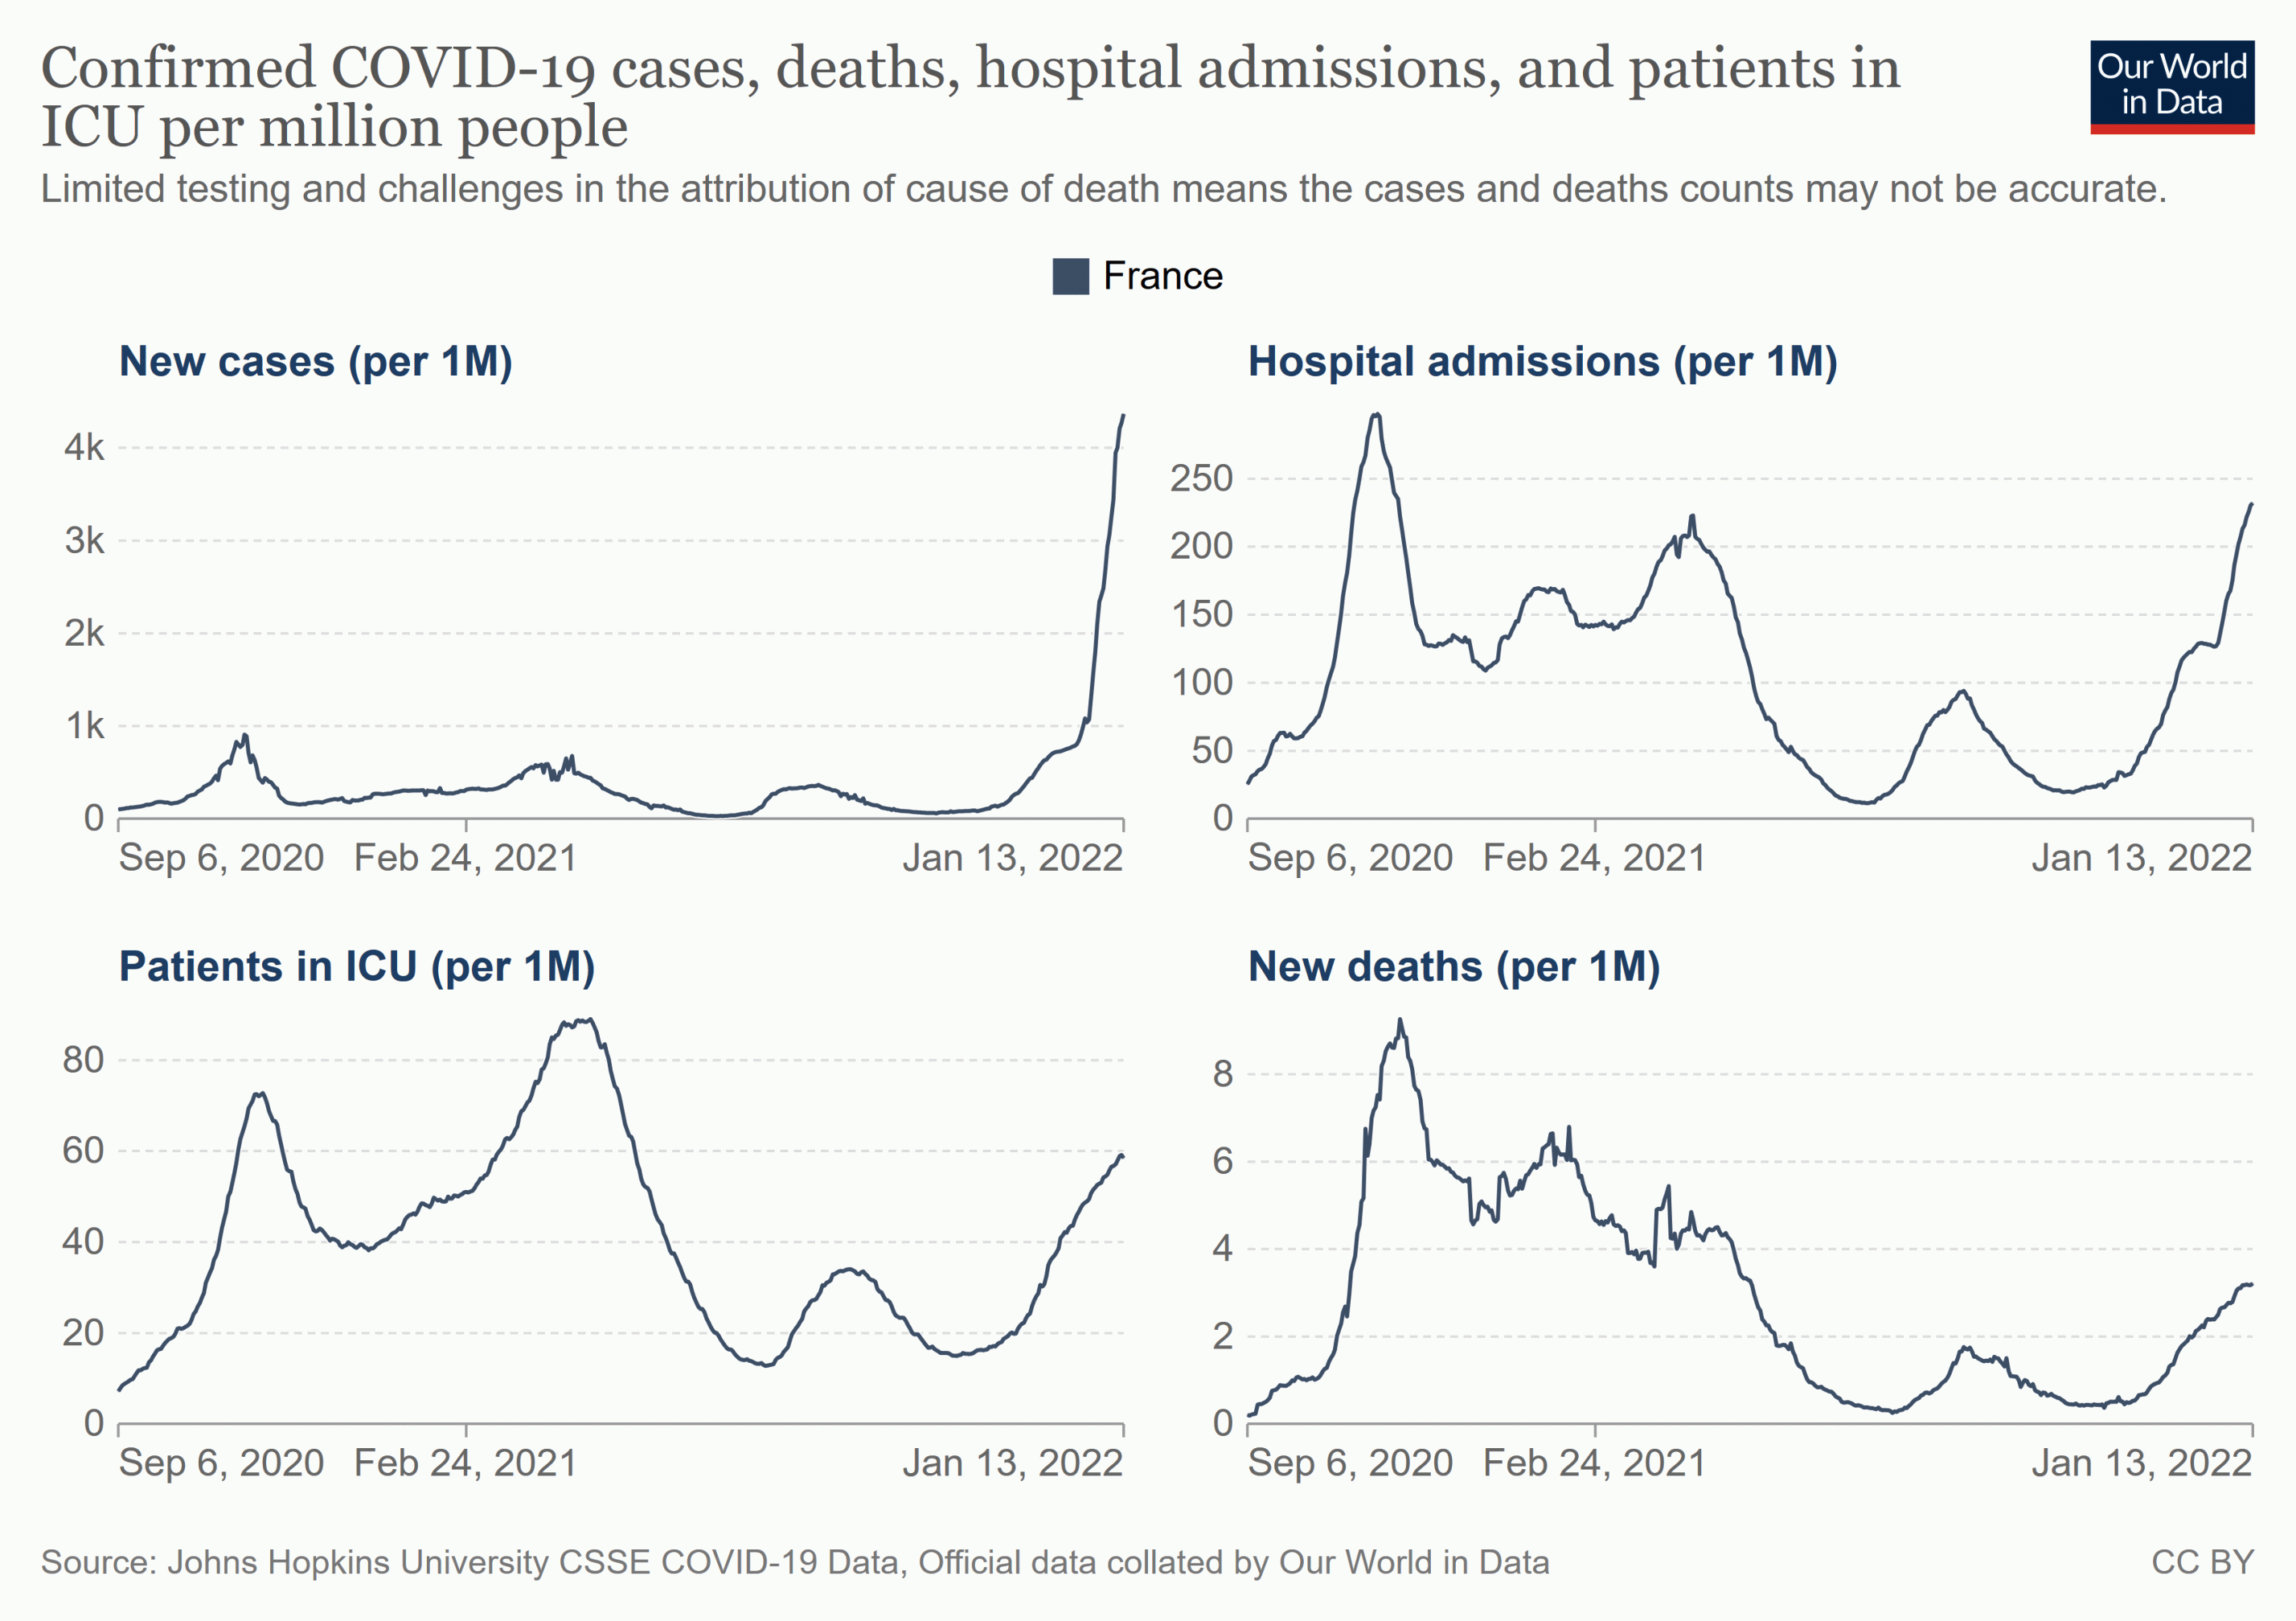 Coronainfektionen, Hospitalisierungen (erste Zeile), sowie in der zweiten Zeile: Intensivpatienten und Todesfälle in Frankreich seit September 2020, jeweils bezogen auf eine Million Einwohner.